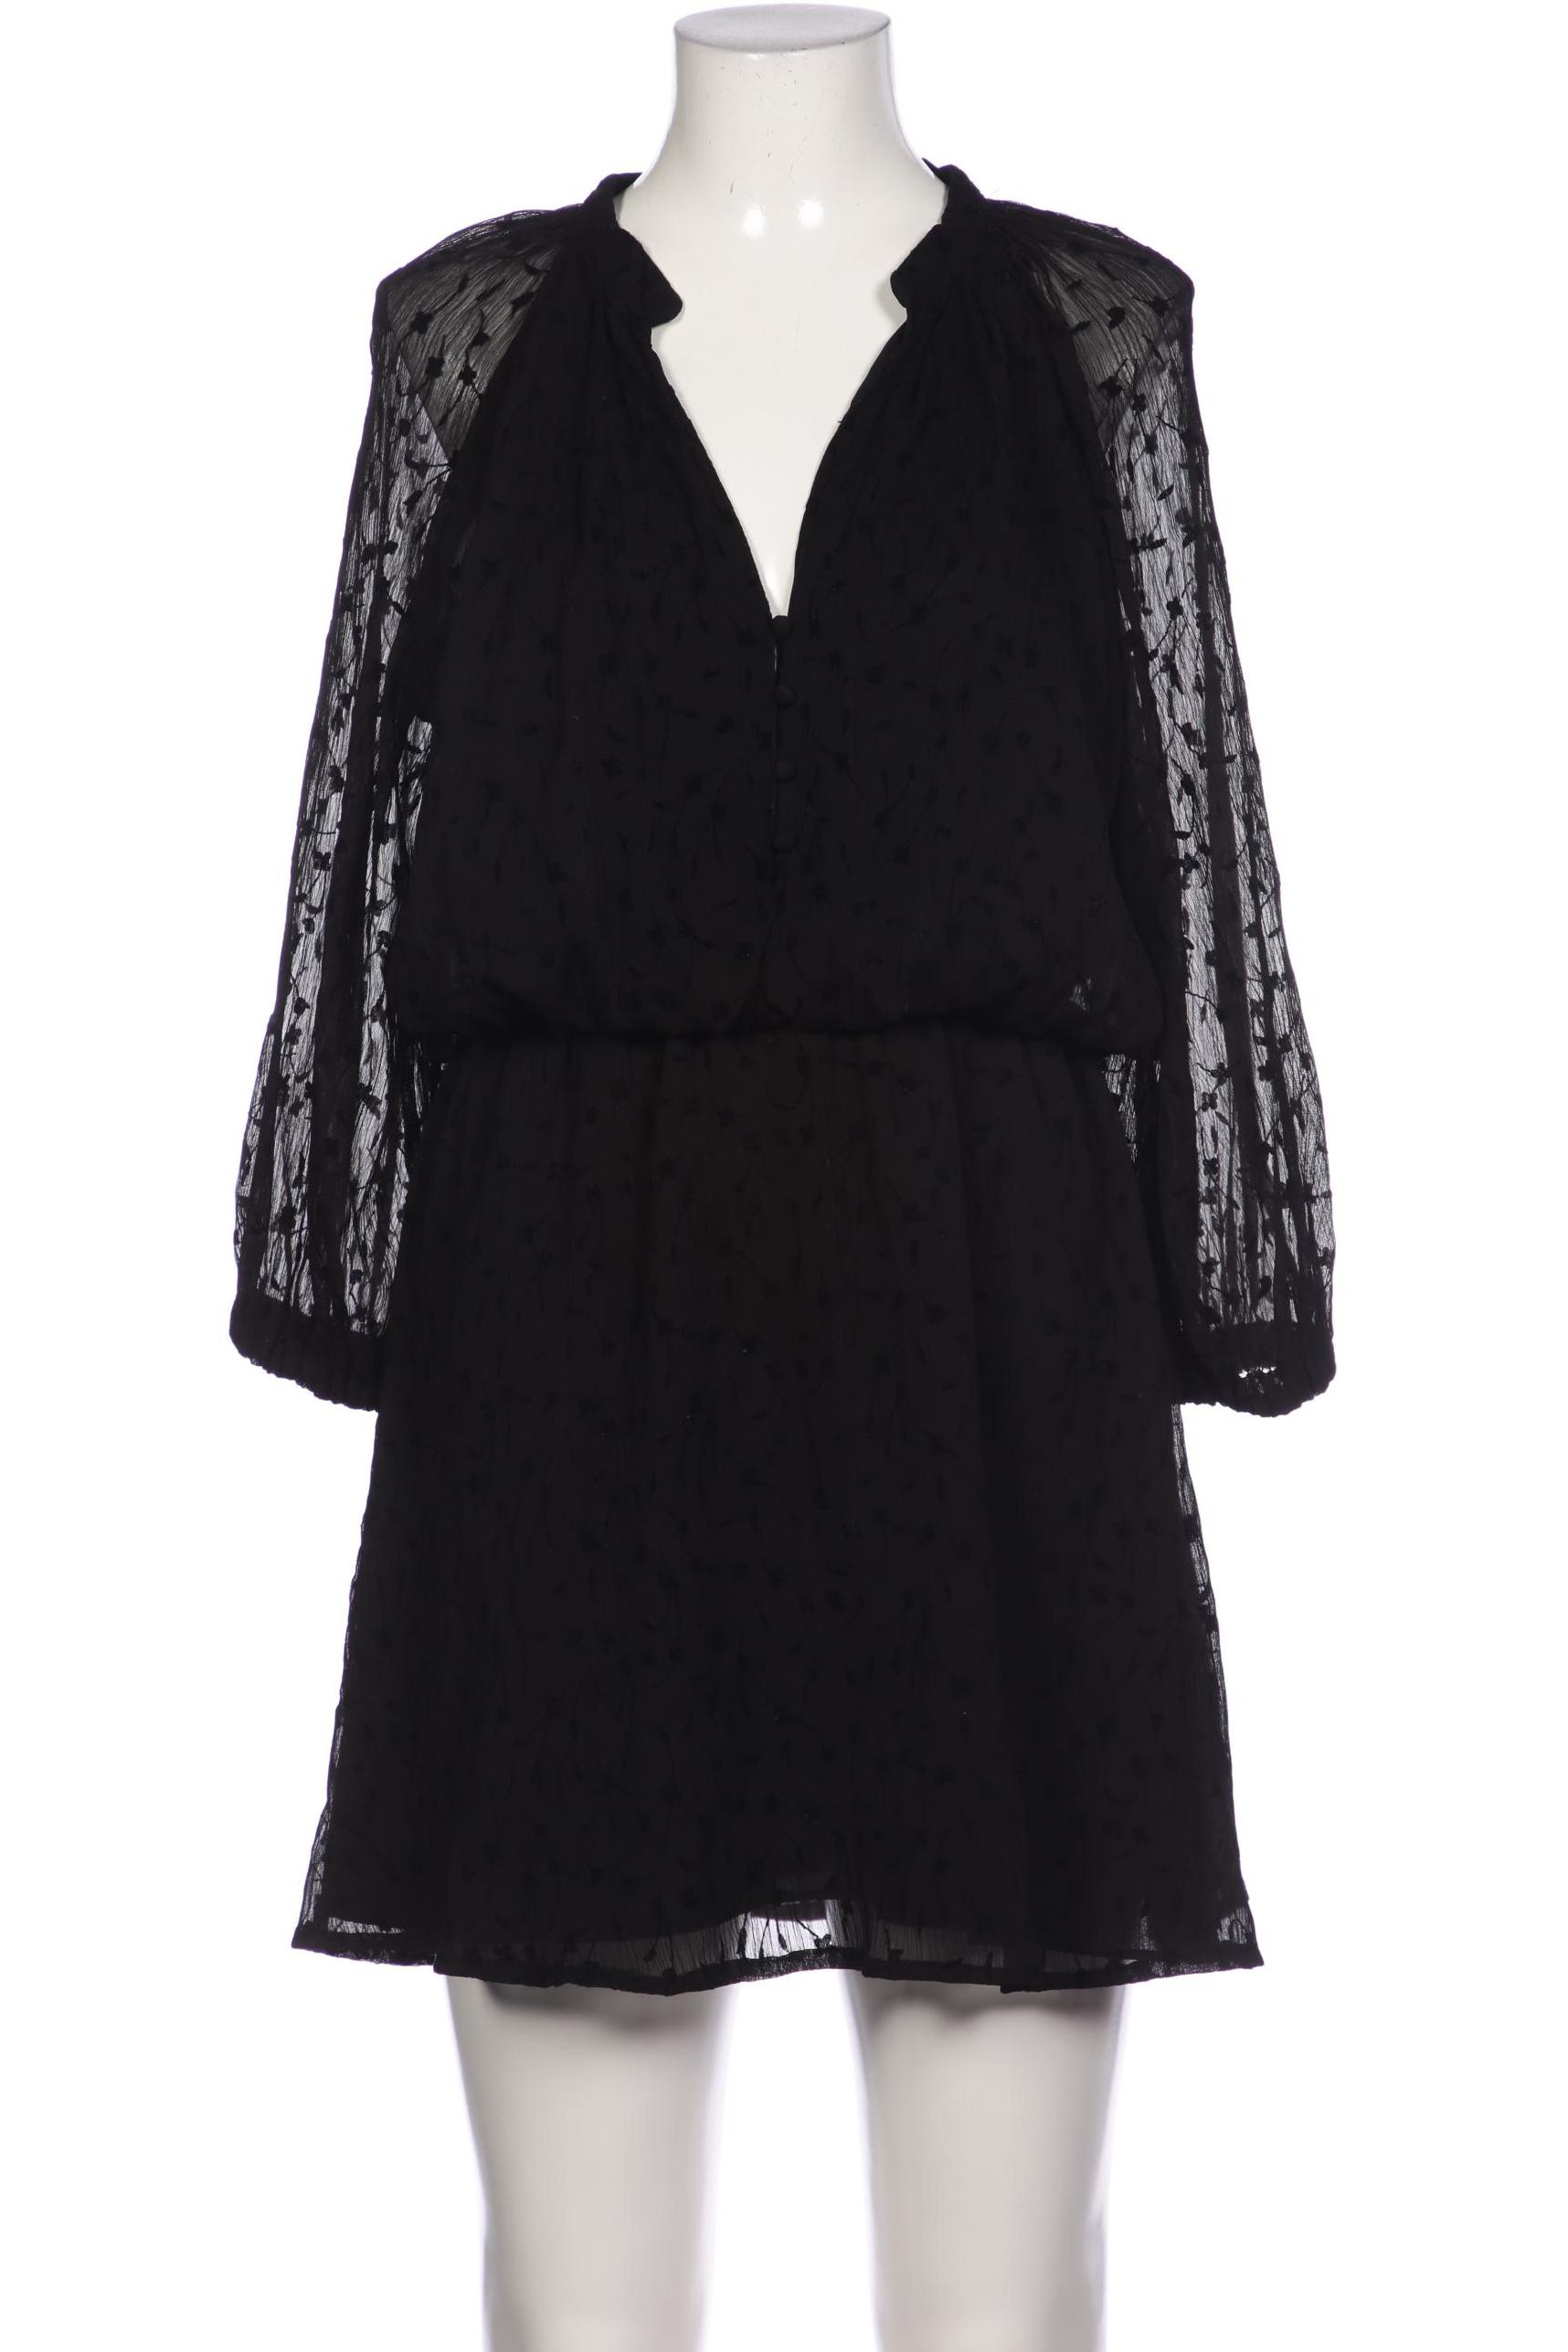 Zara Damen Kleid, schwarz, Gr. 38 von ZARA